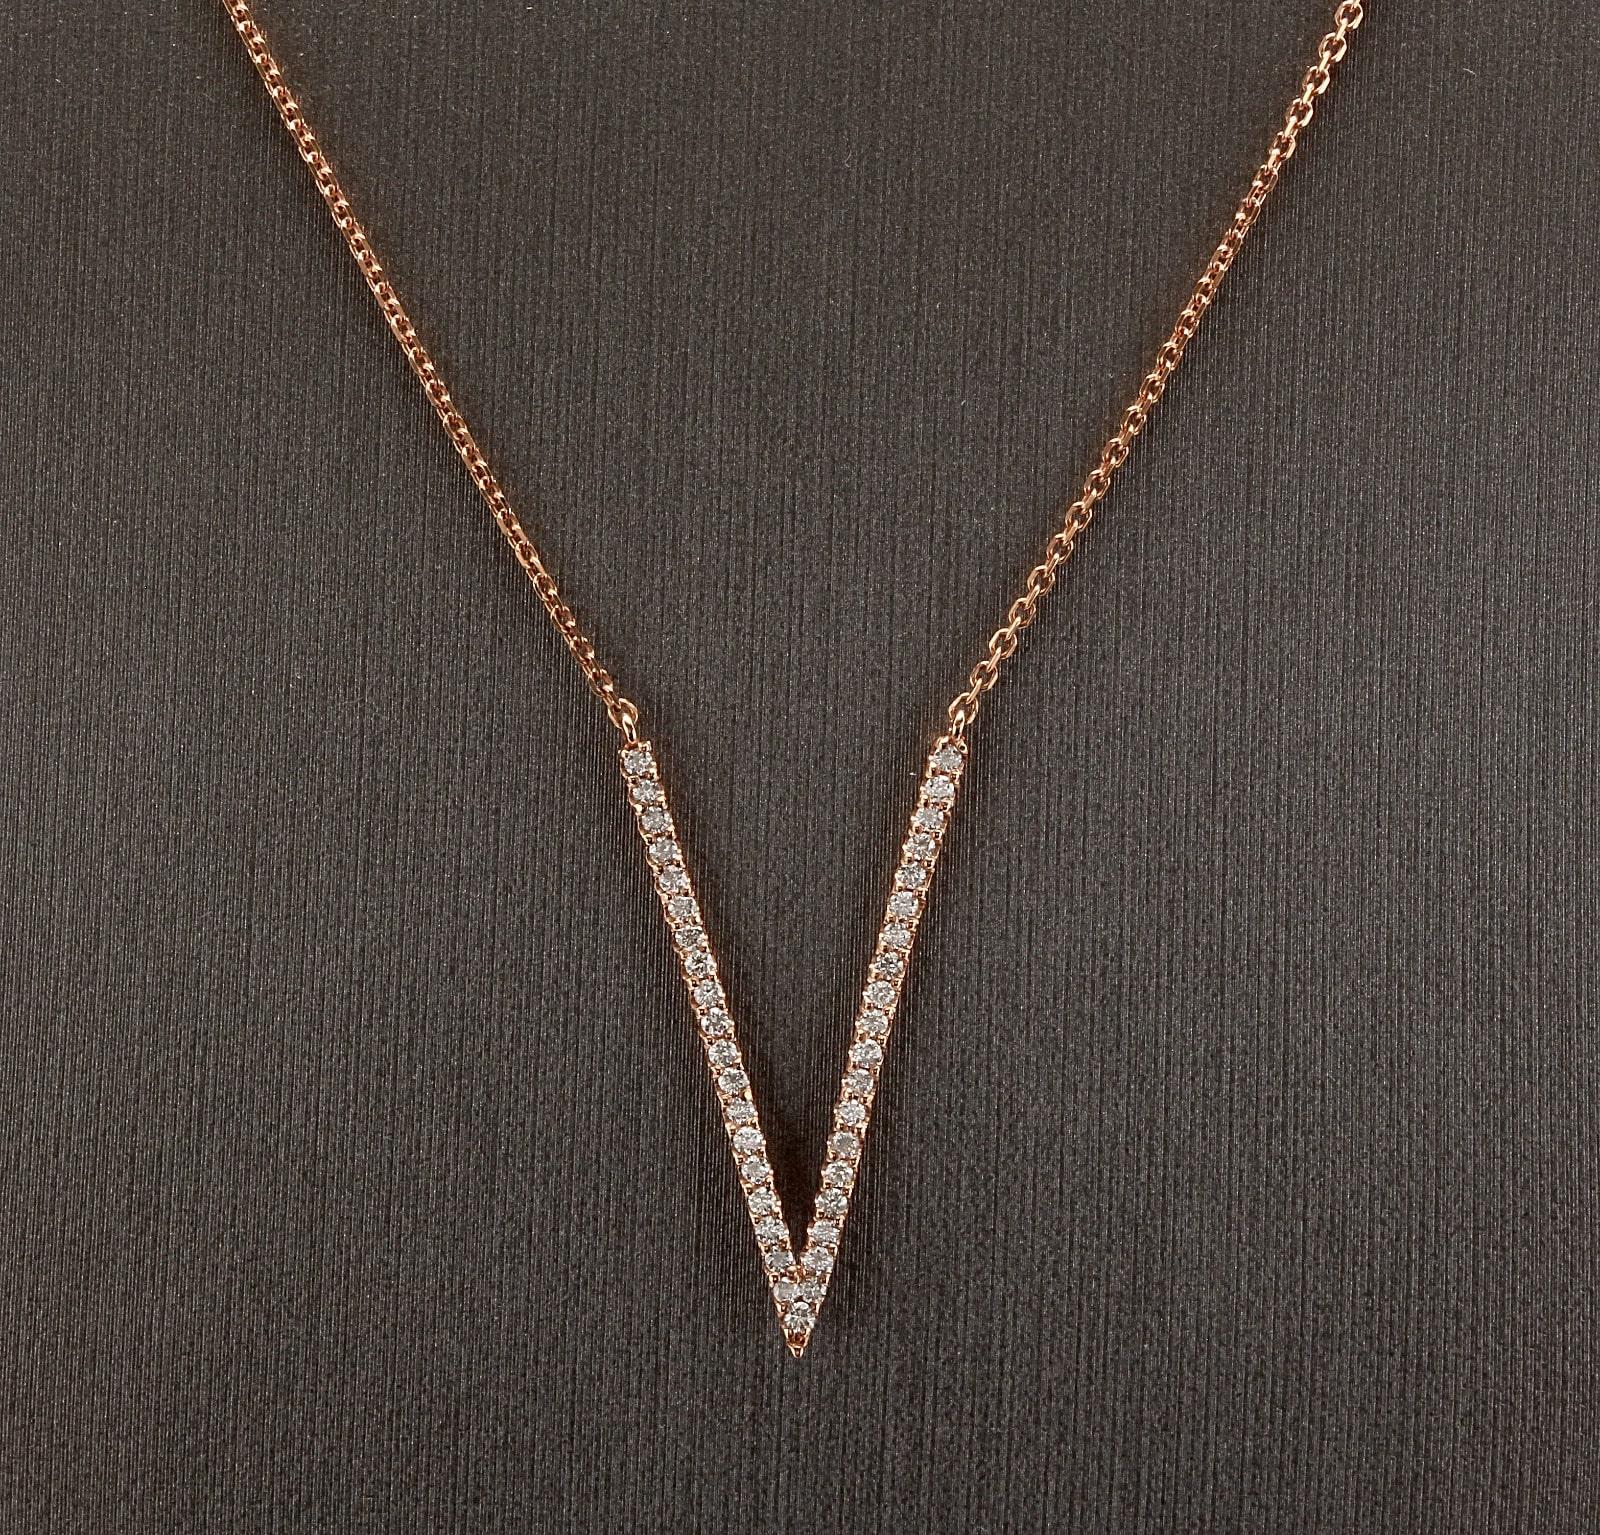 0.45Ct Splendid 14k Solid Rose Gold Kette Halskette

Erstaunlich schönes Stück!

Gestempelt: 14k

Total Natural Round Diamond Gewicht ist: Ca. 0,45 Karat (G-H / SI1-SI2)

Kette Länge ist: 18 Zoll (kann auf 16